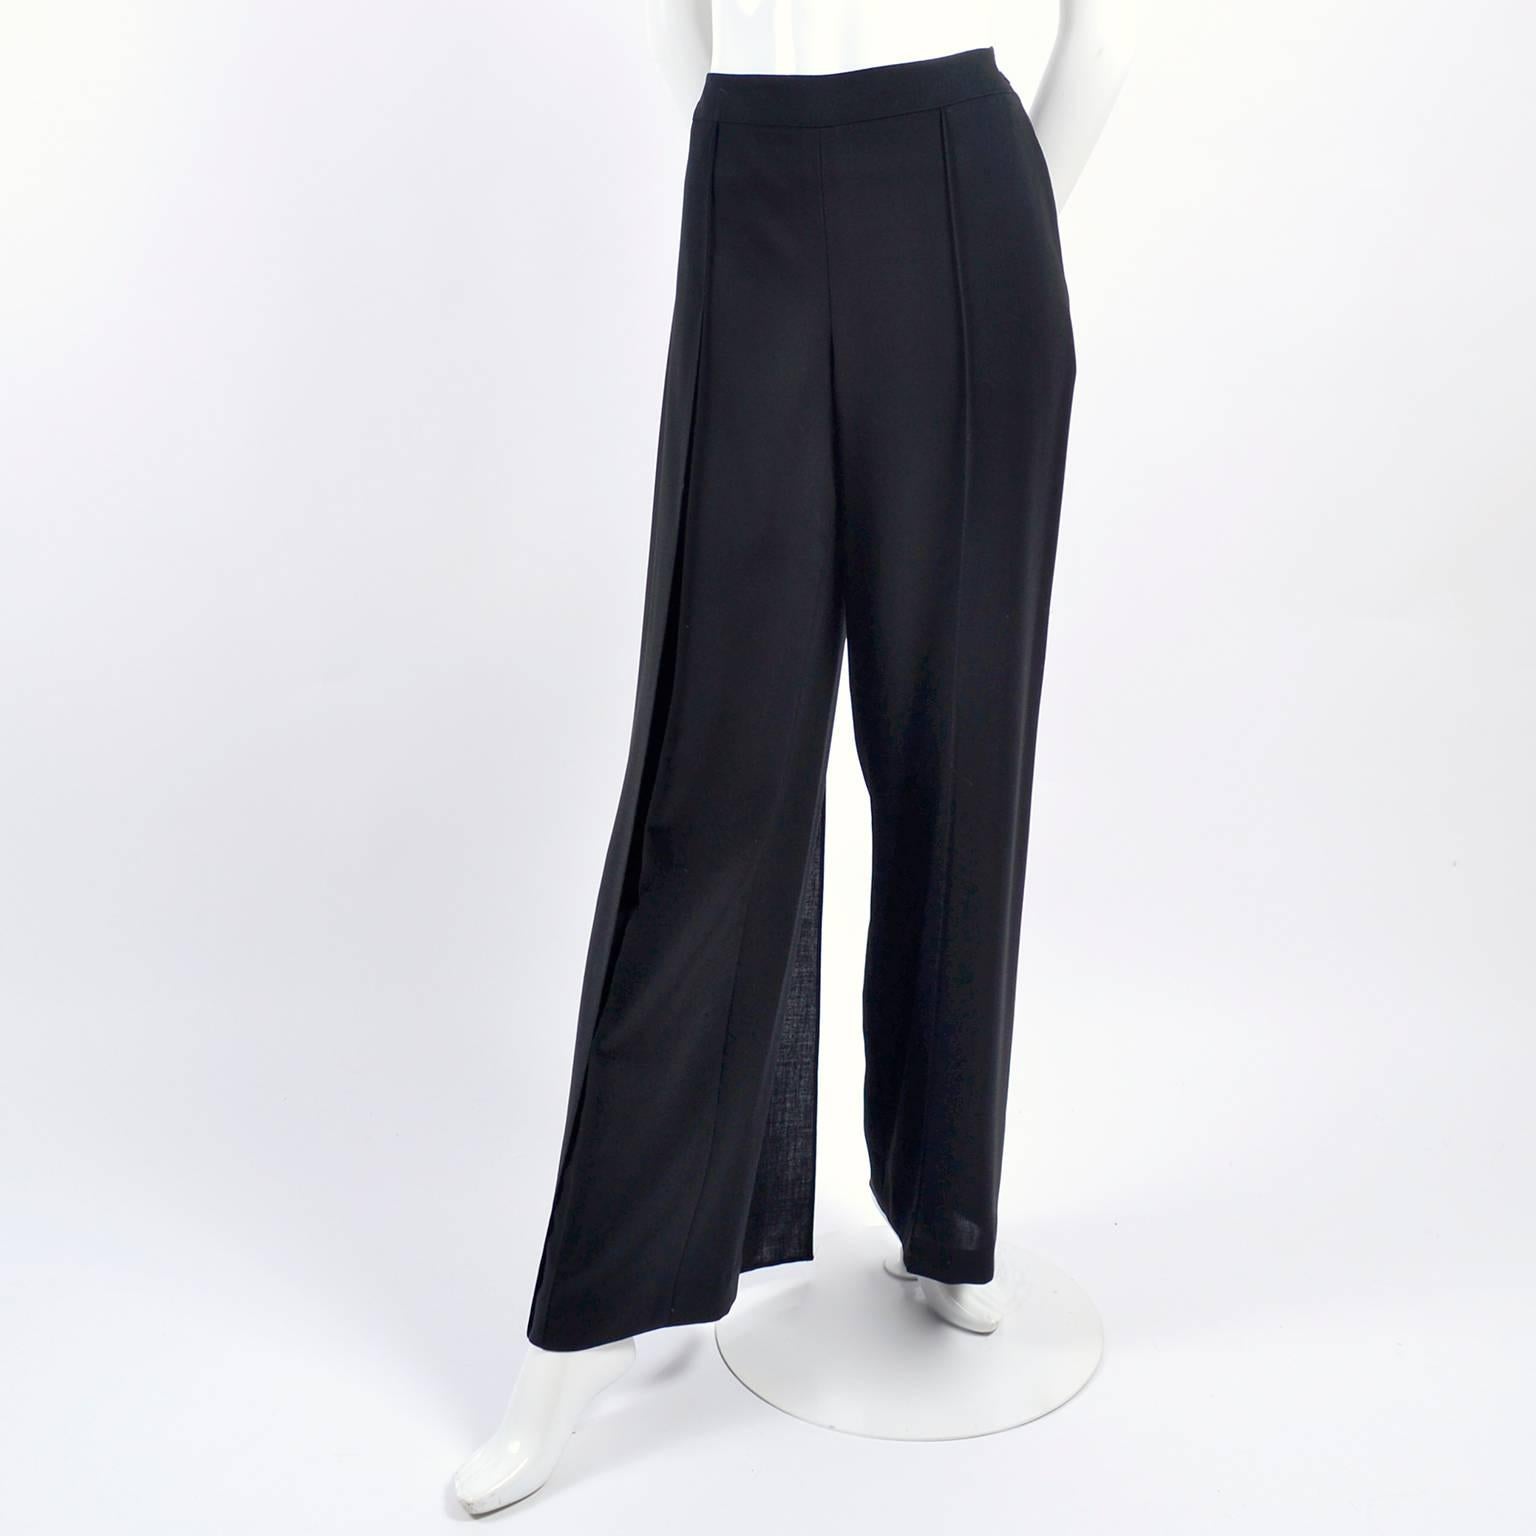 Noir Chanel - Pantalon en laine noire, taille haute et panneau latéral à braguette, 40 US 10, 1990, état neuf en vente